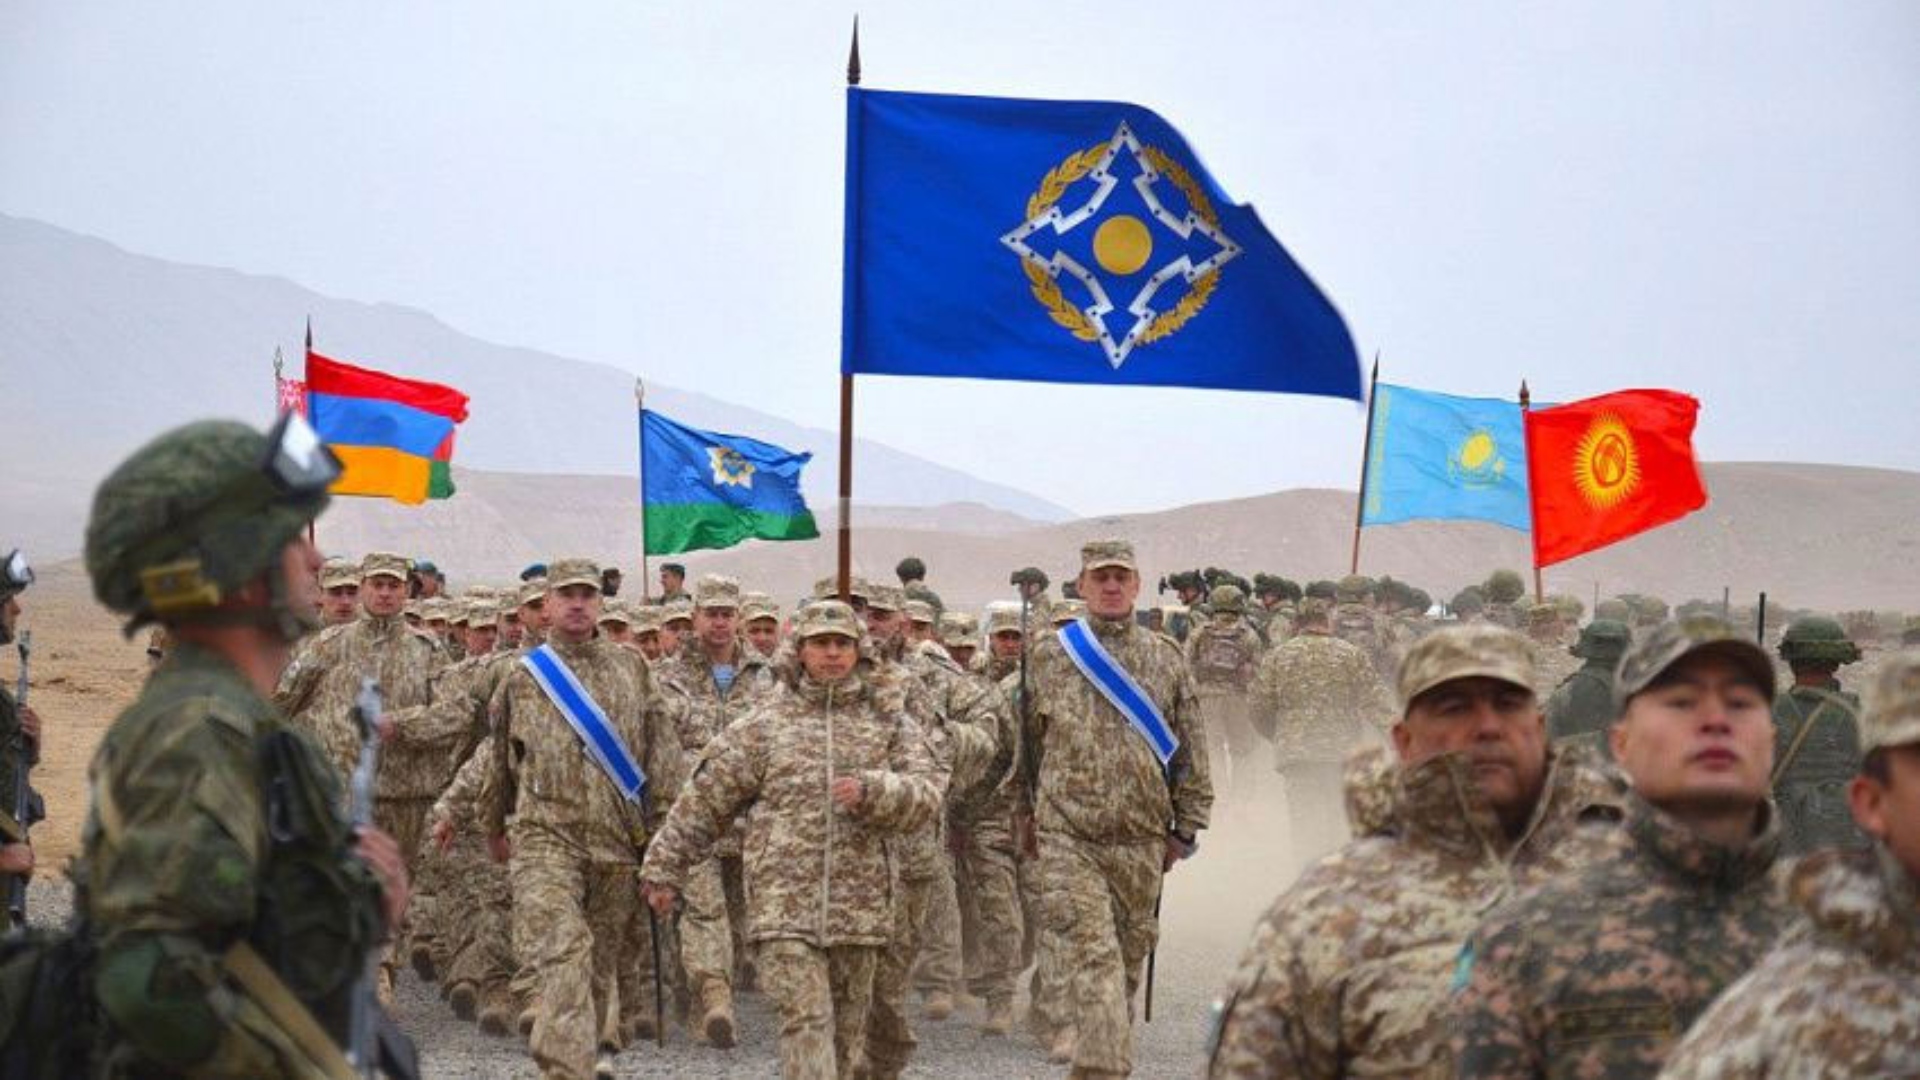 Ակնկալում ենք, որ ՀԱՊԿ-ը Հայաստանին բավարար ռազմական օգնություն կտրամադրի․ Արմեն Գրիգորյան